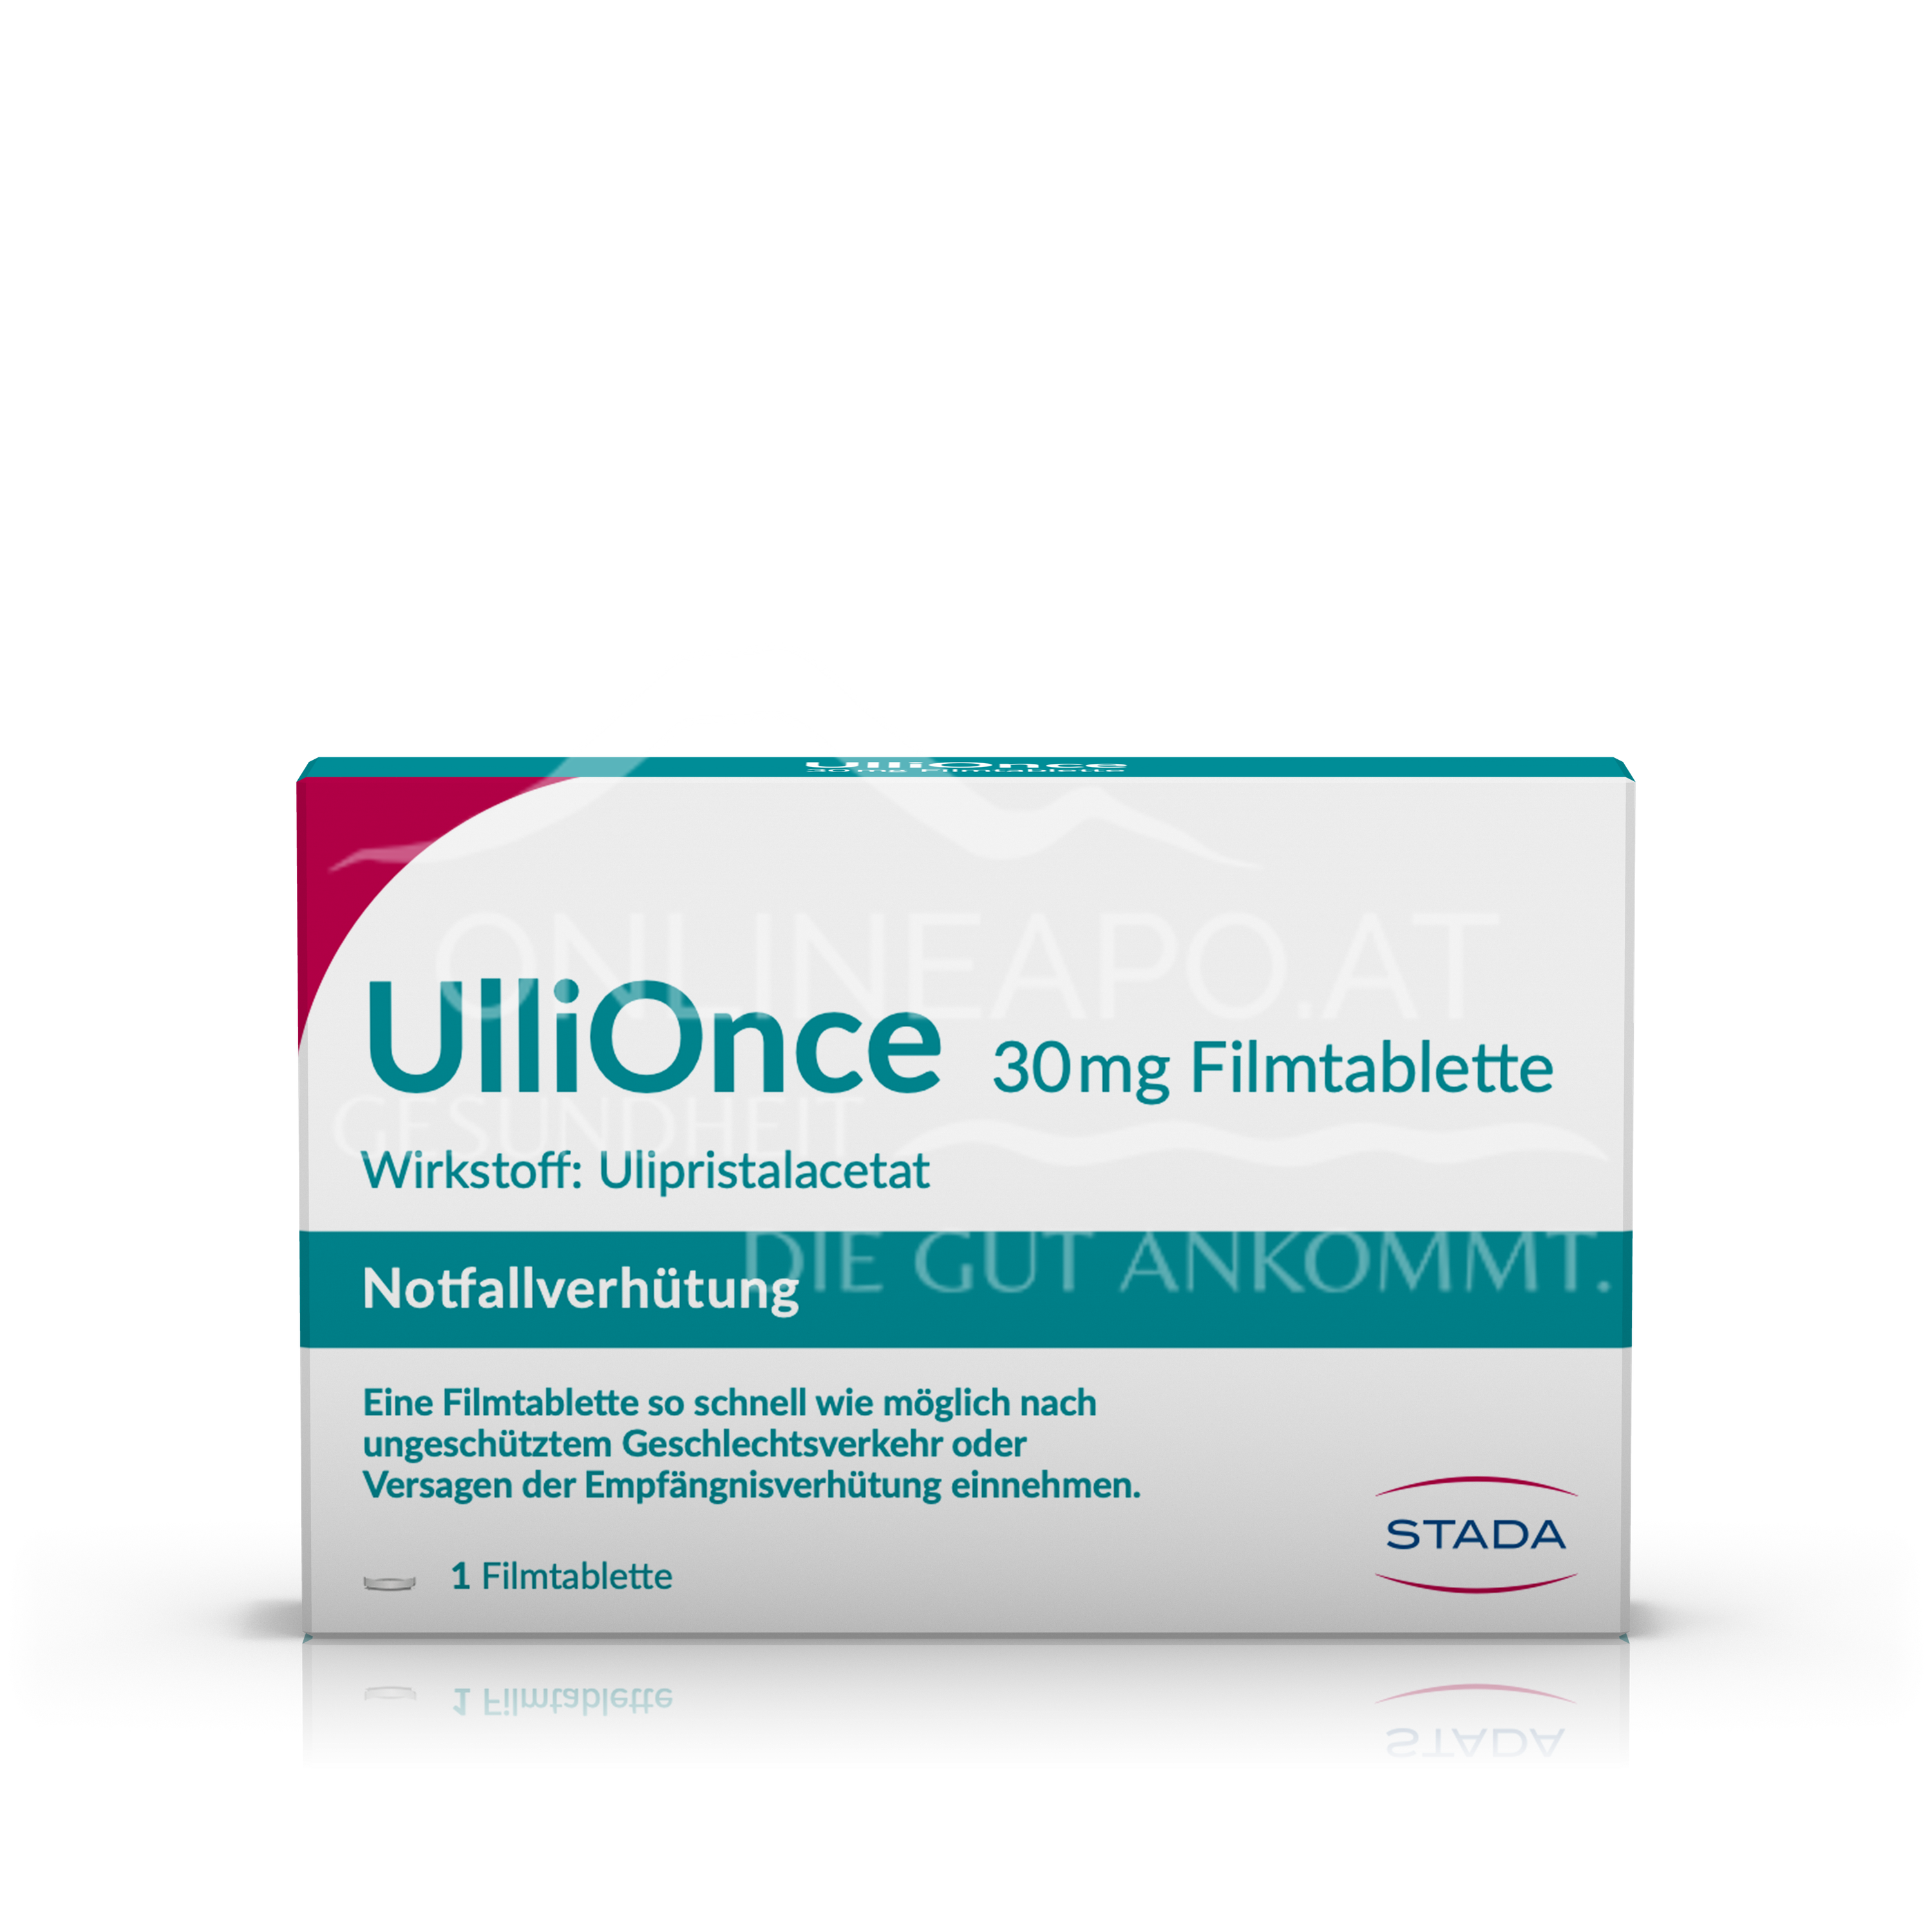 UlliOnce 30 mg Filmtablette